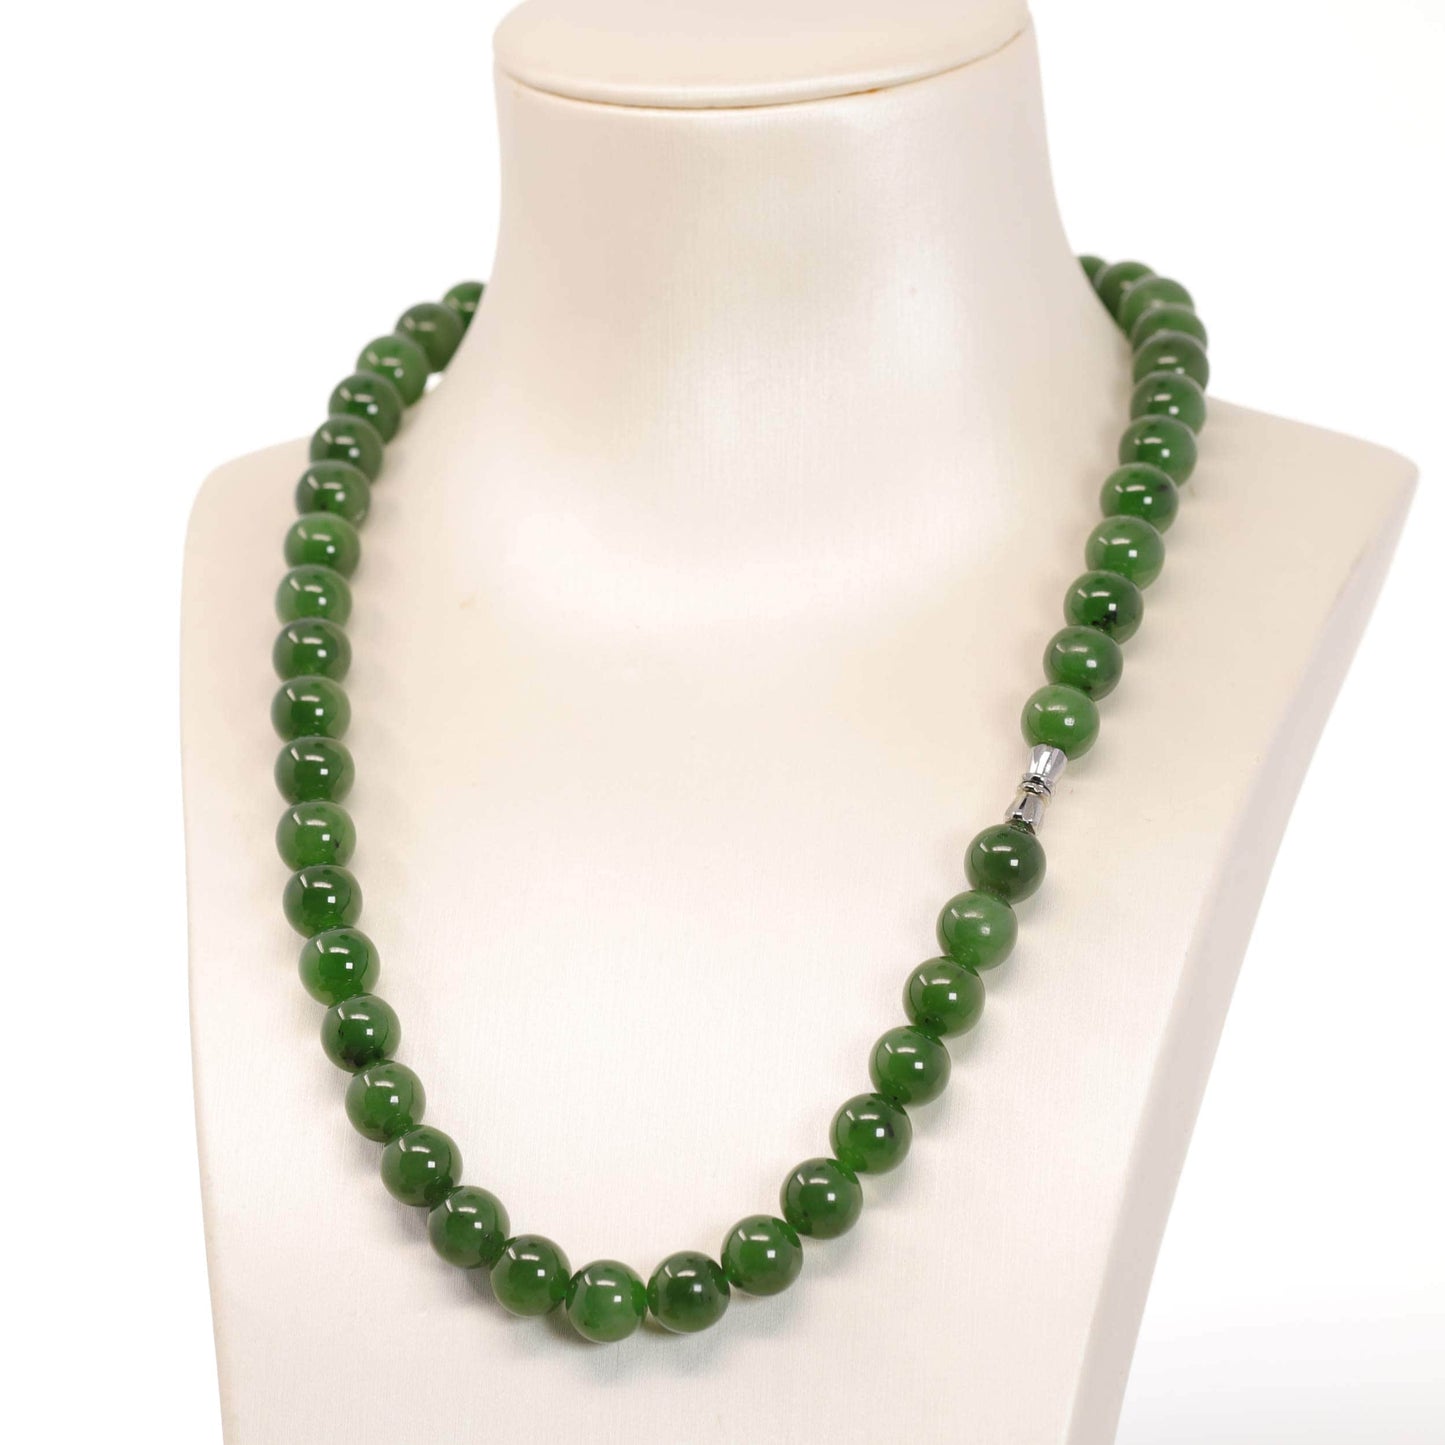  Genuine Green Nephrite Jade Round Beads Necklace, Real Jade Jewelry, Jade Education, .com